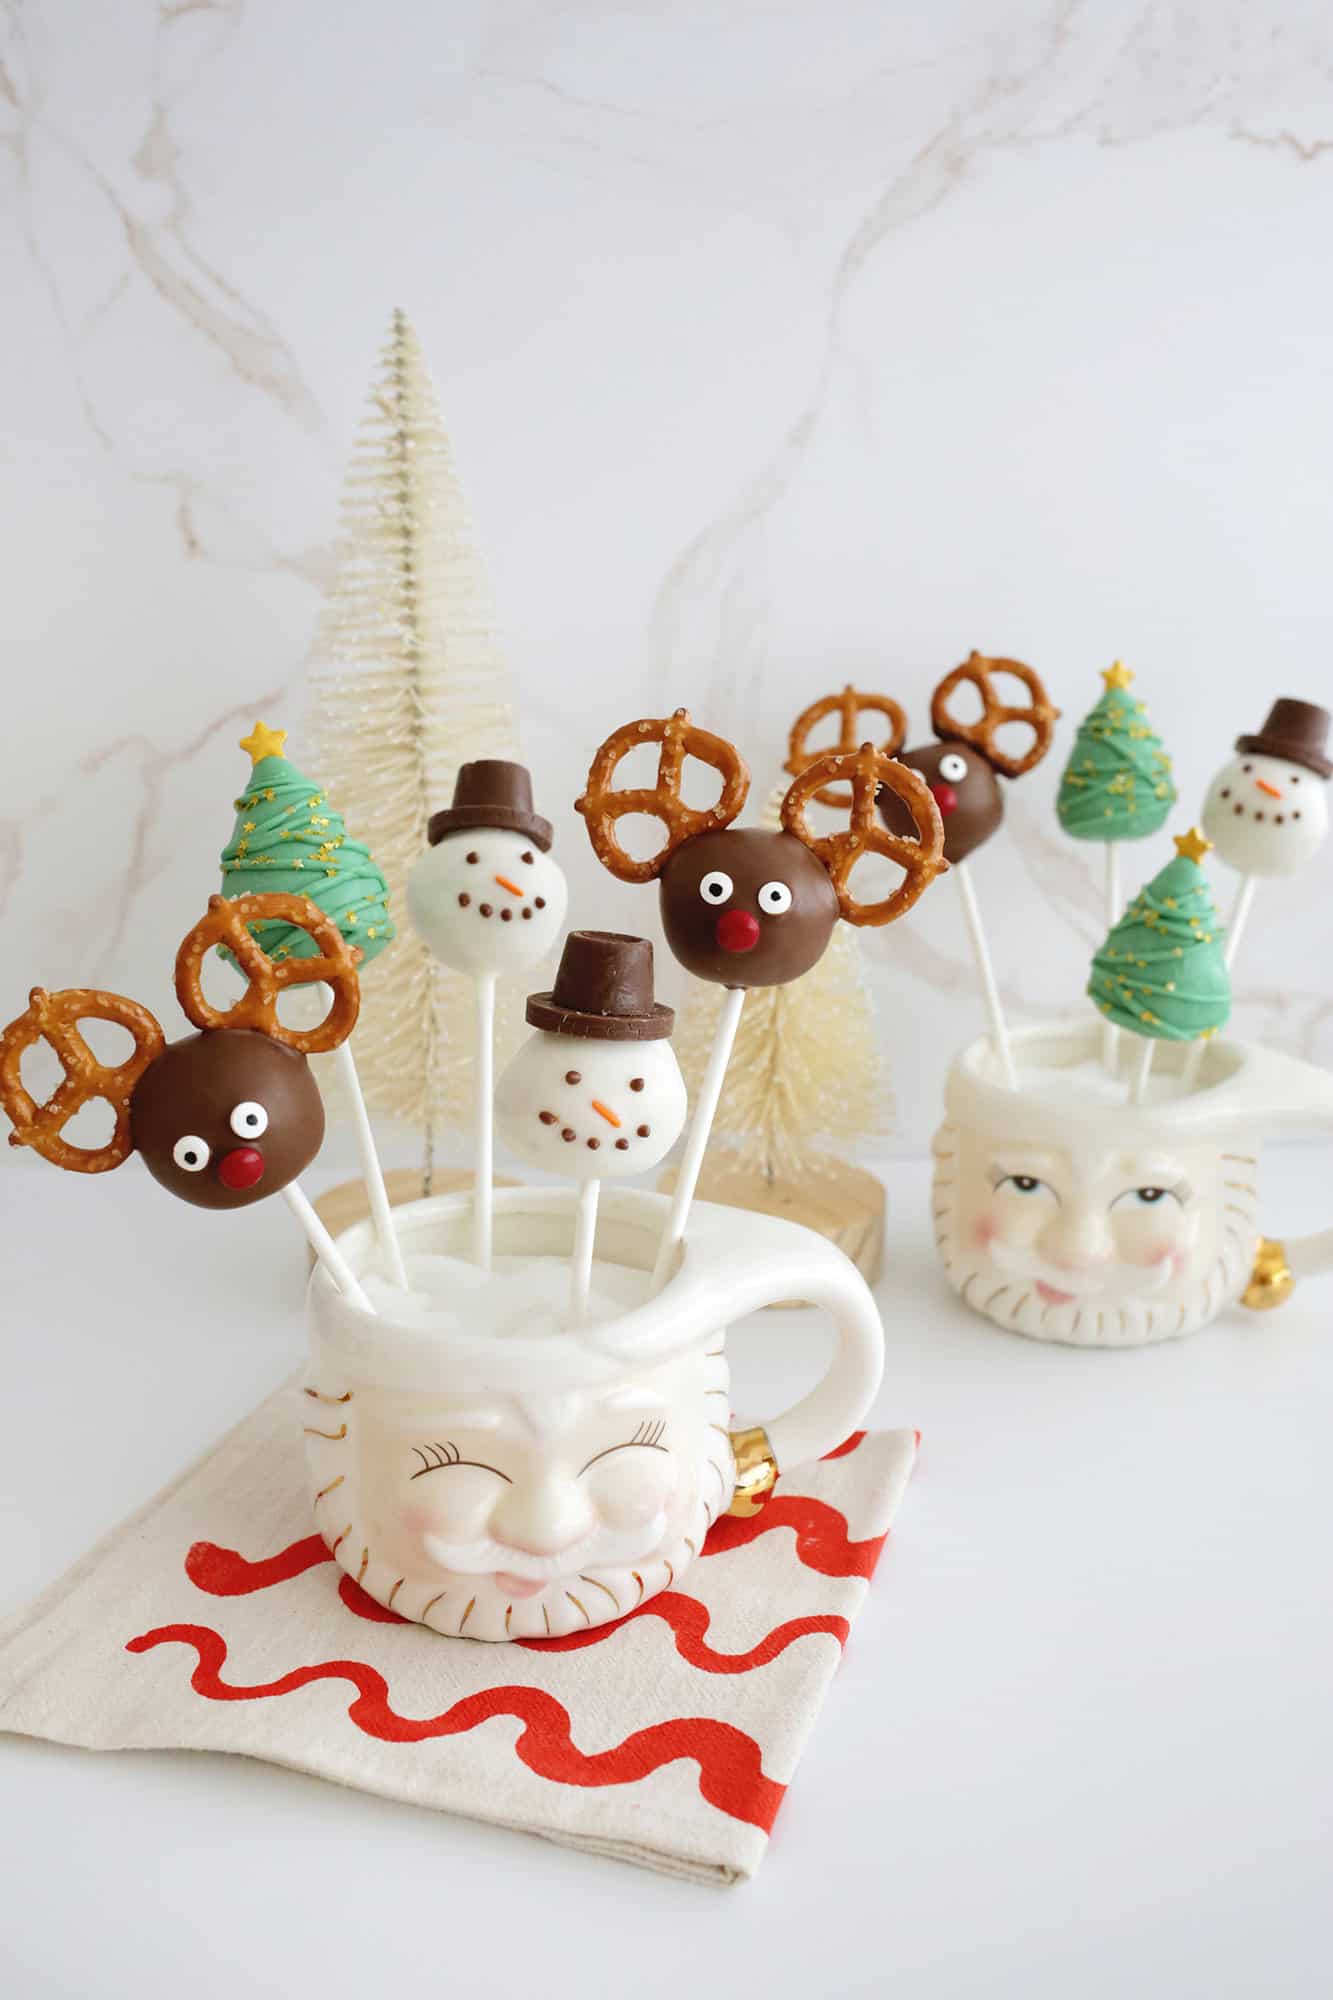 Bolo de Natal aparece com renas, boneco de neve e árvore de Natal